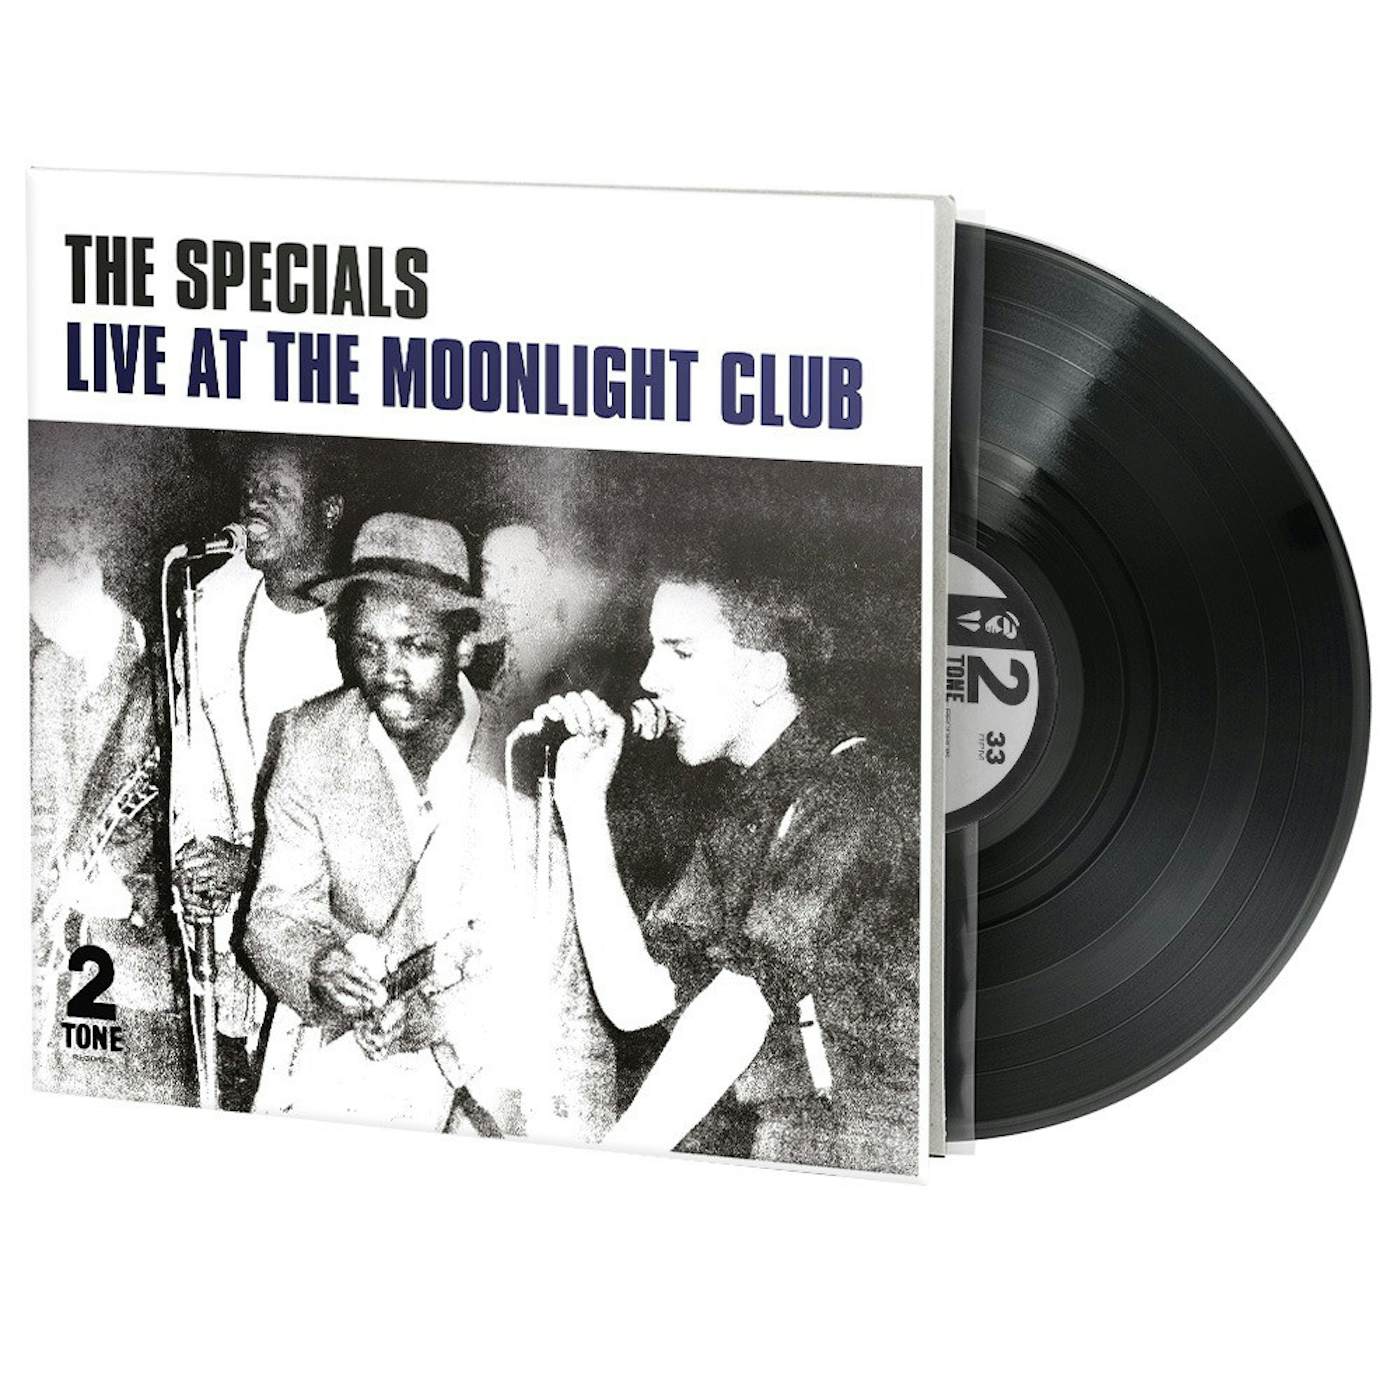 The Specials Live at the Moonlight Club Vinyl Record